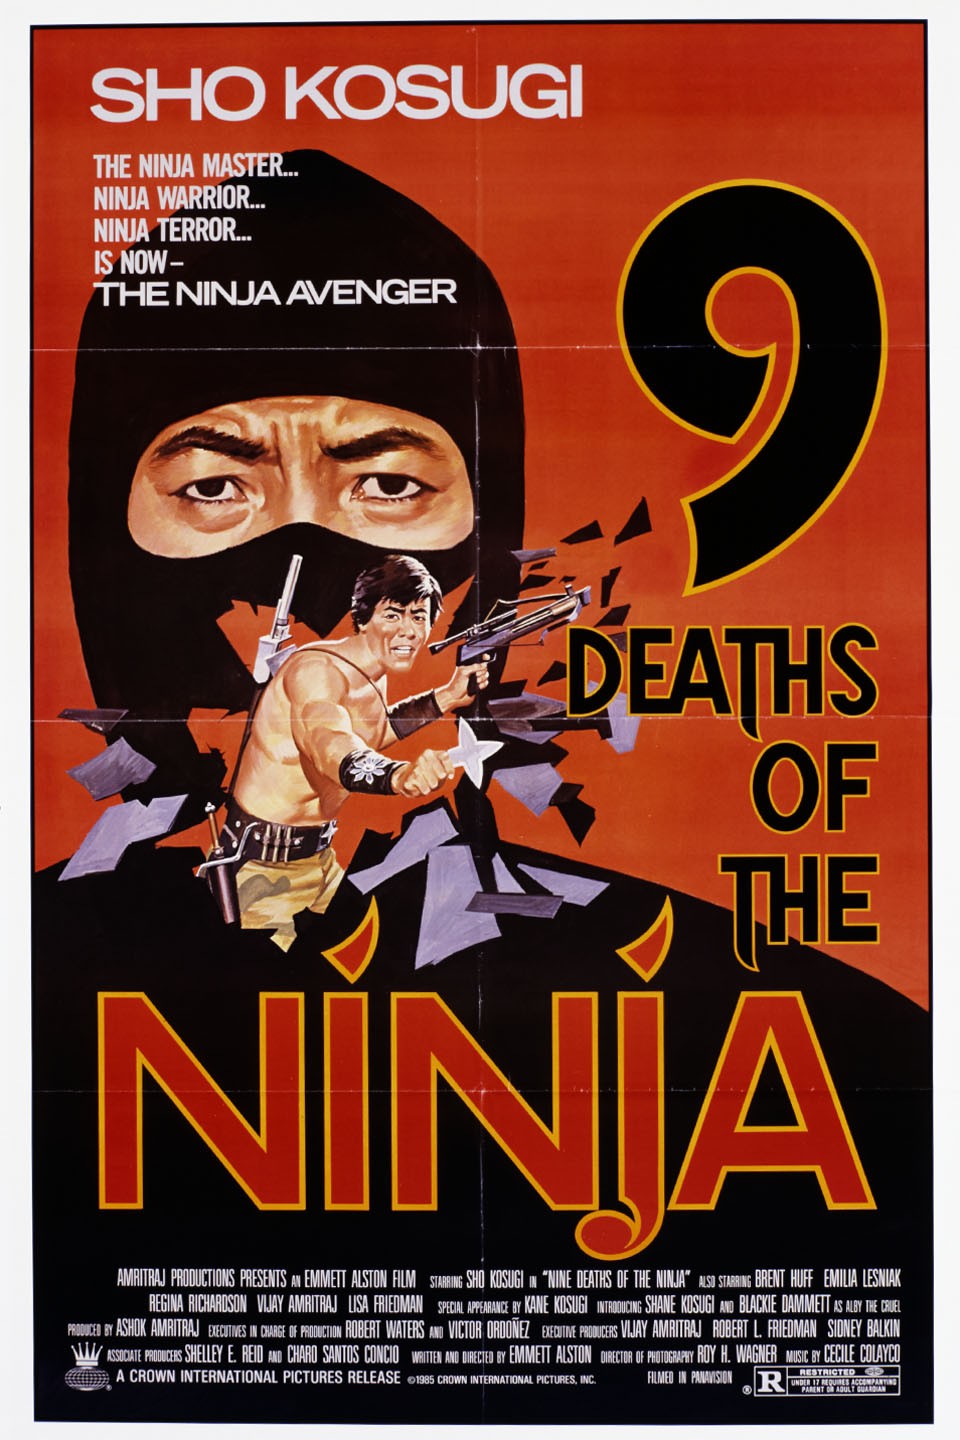 Night of the Ninja - Rotten Tomatoes